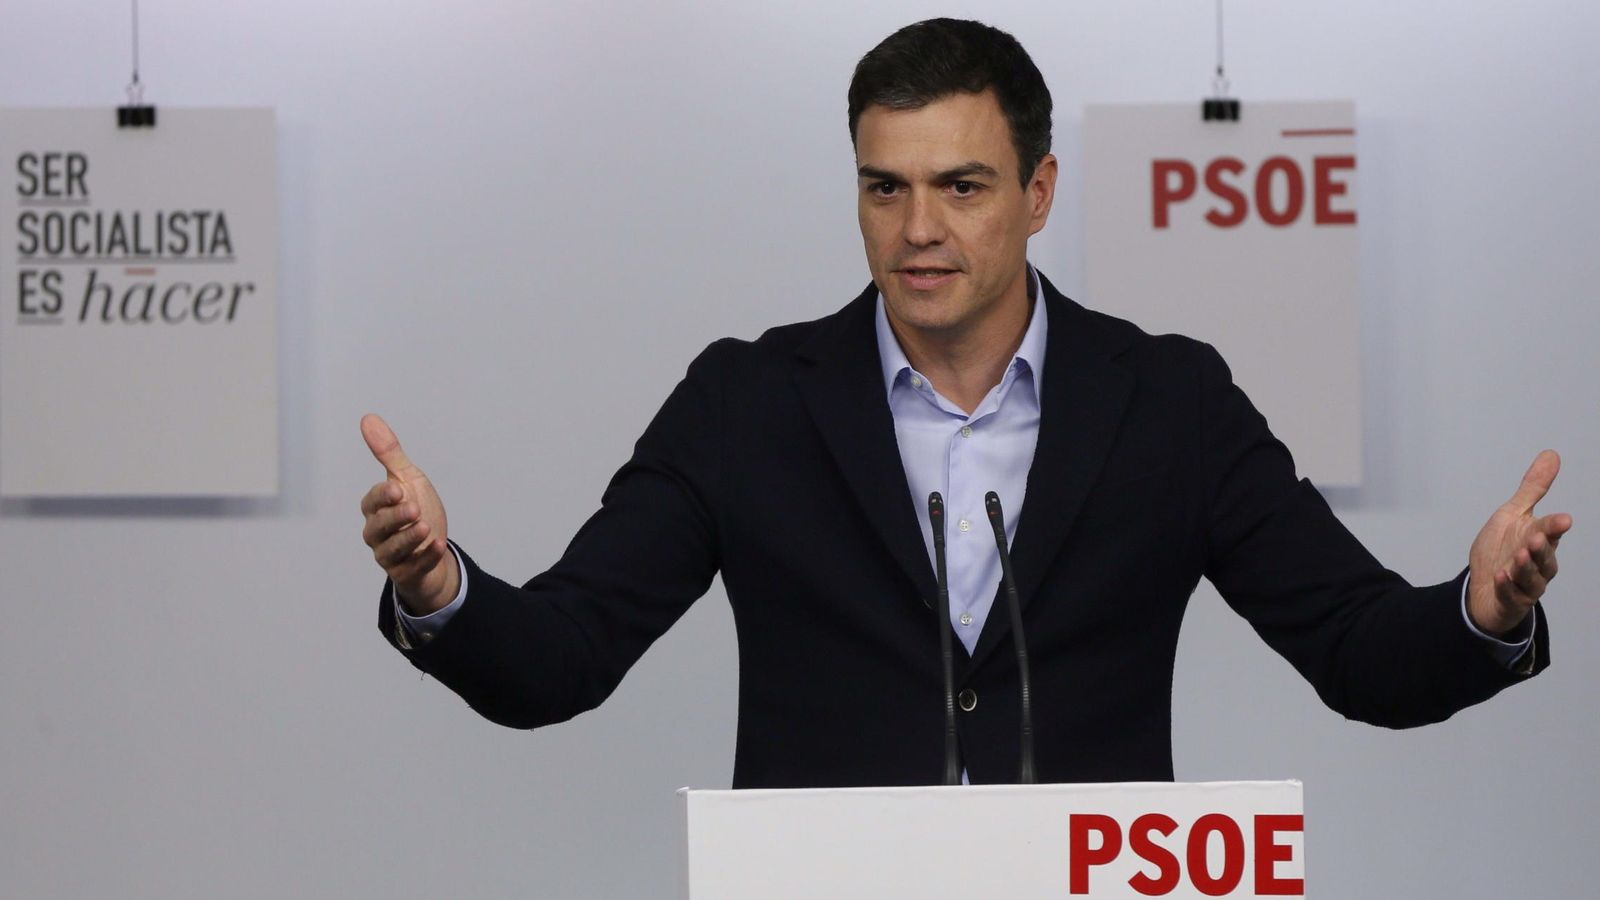 Foto: El secretario general del PSOE, Pedro Sánchez. (Efe)